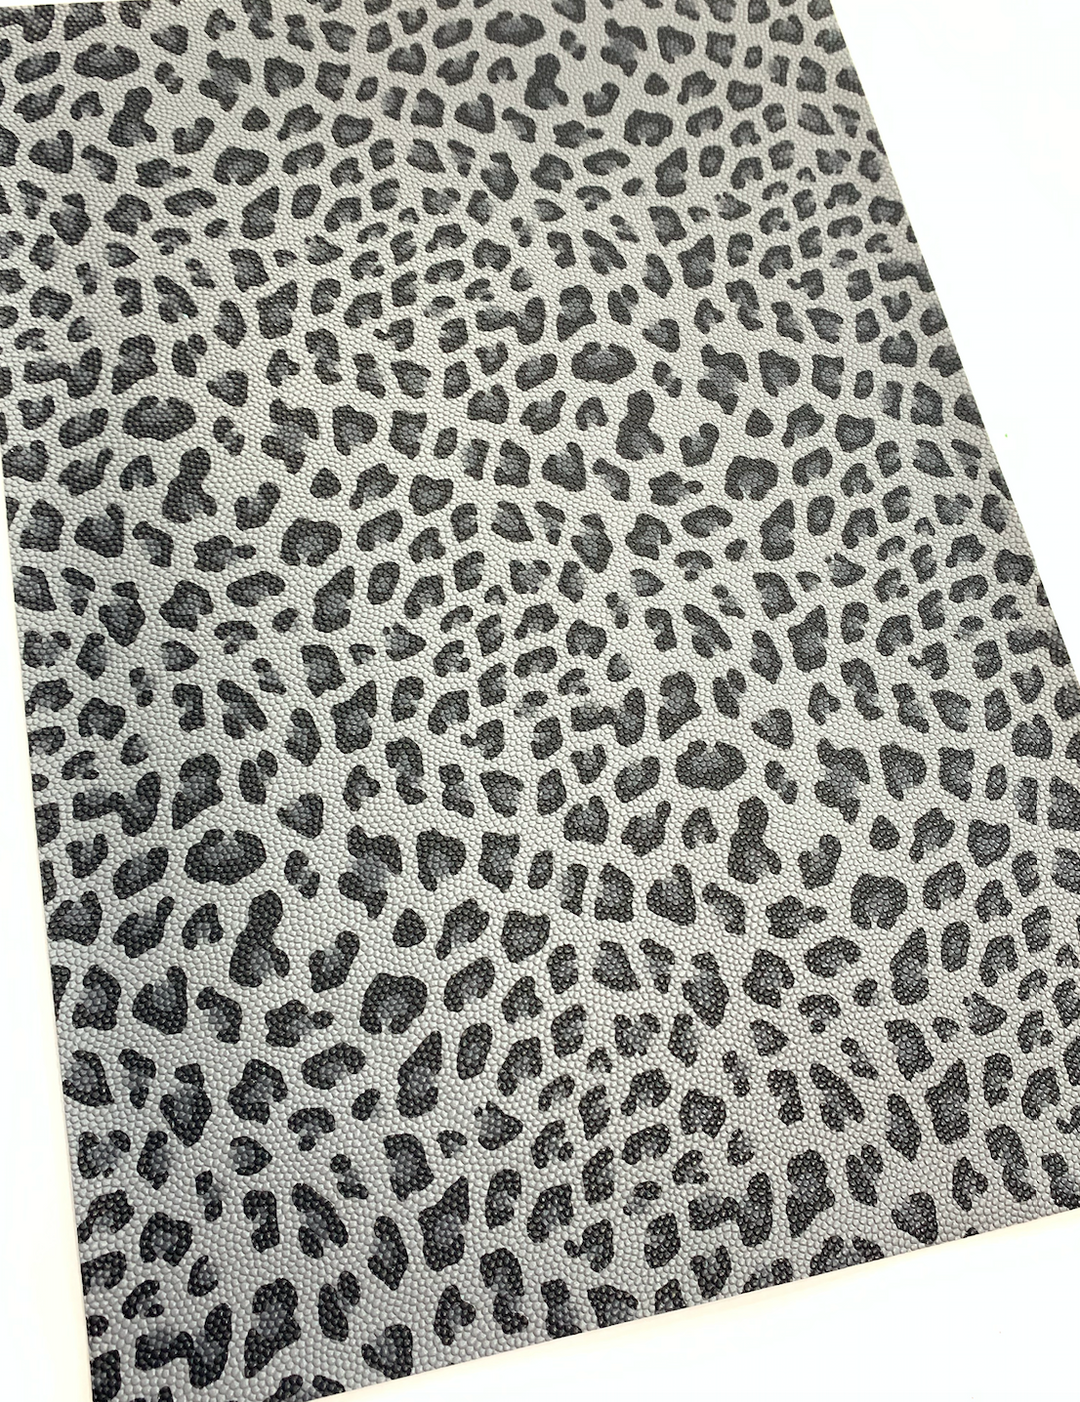 Dark Grey Leopard Faux Leather Fabric